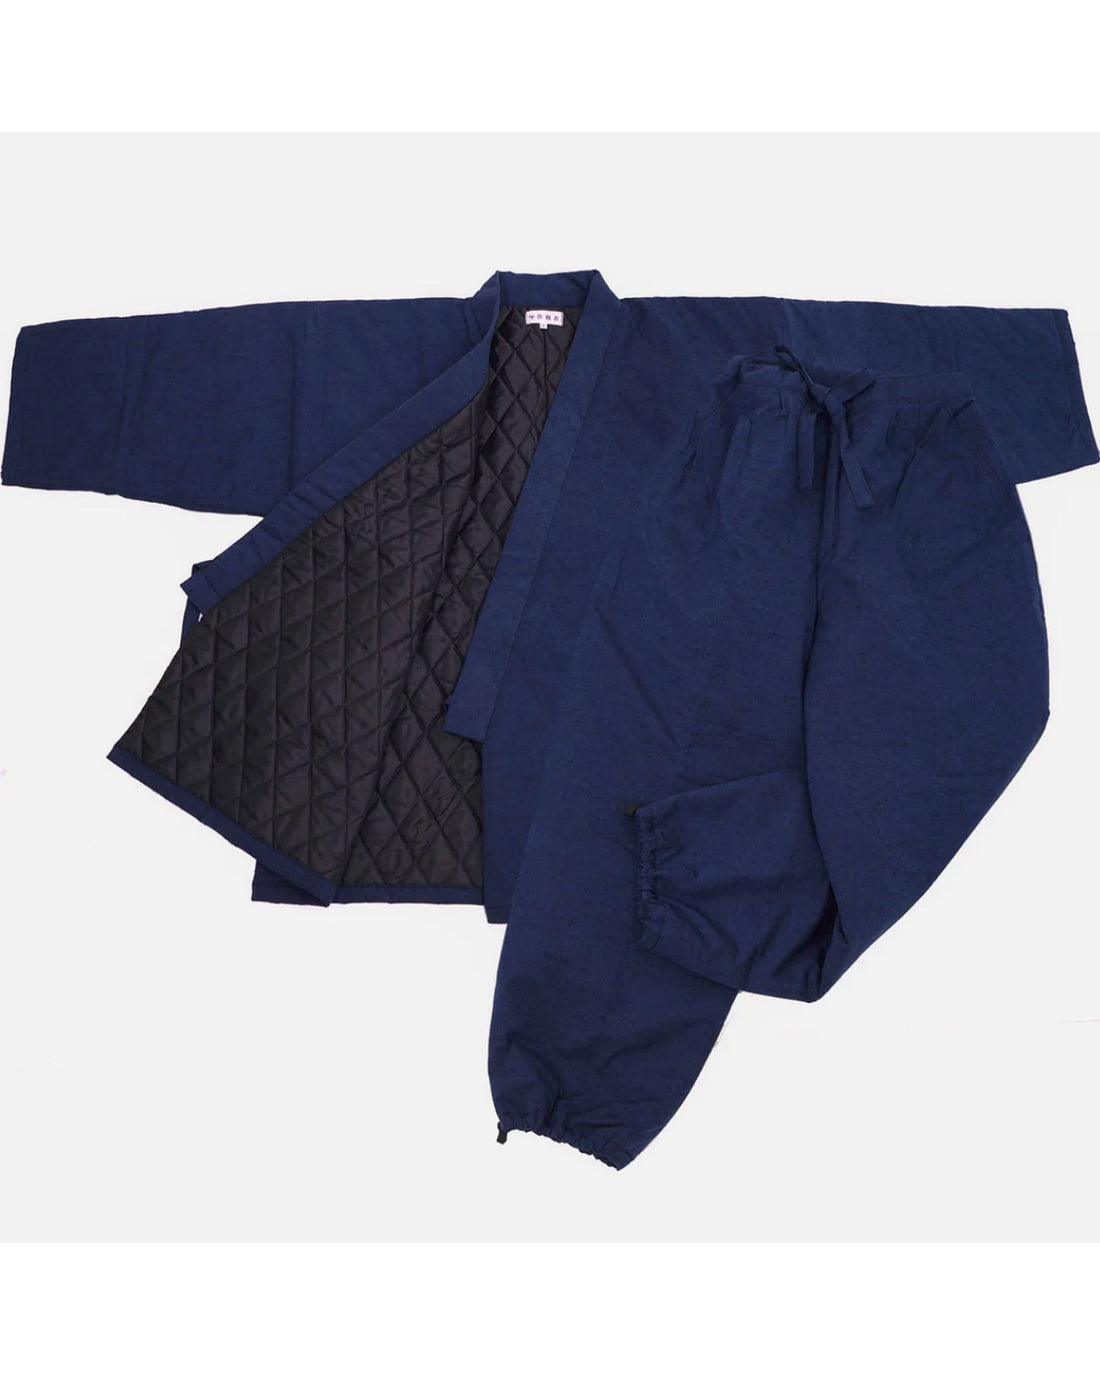 Mastercraftsmanship Samue Set with Padding - Kimono Style